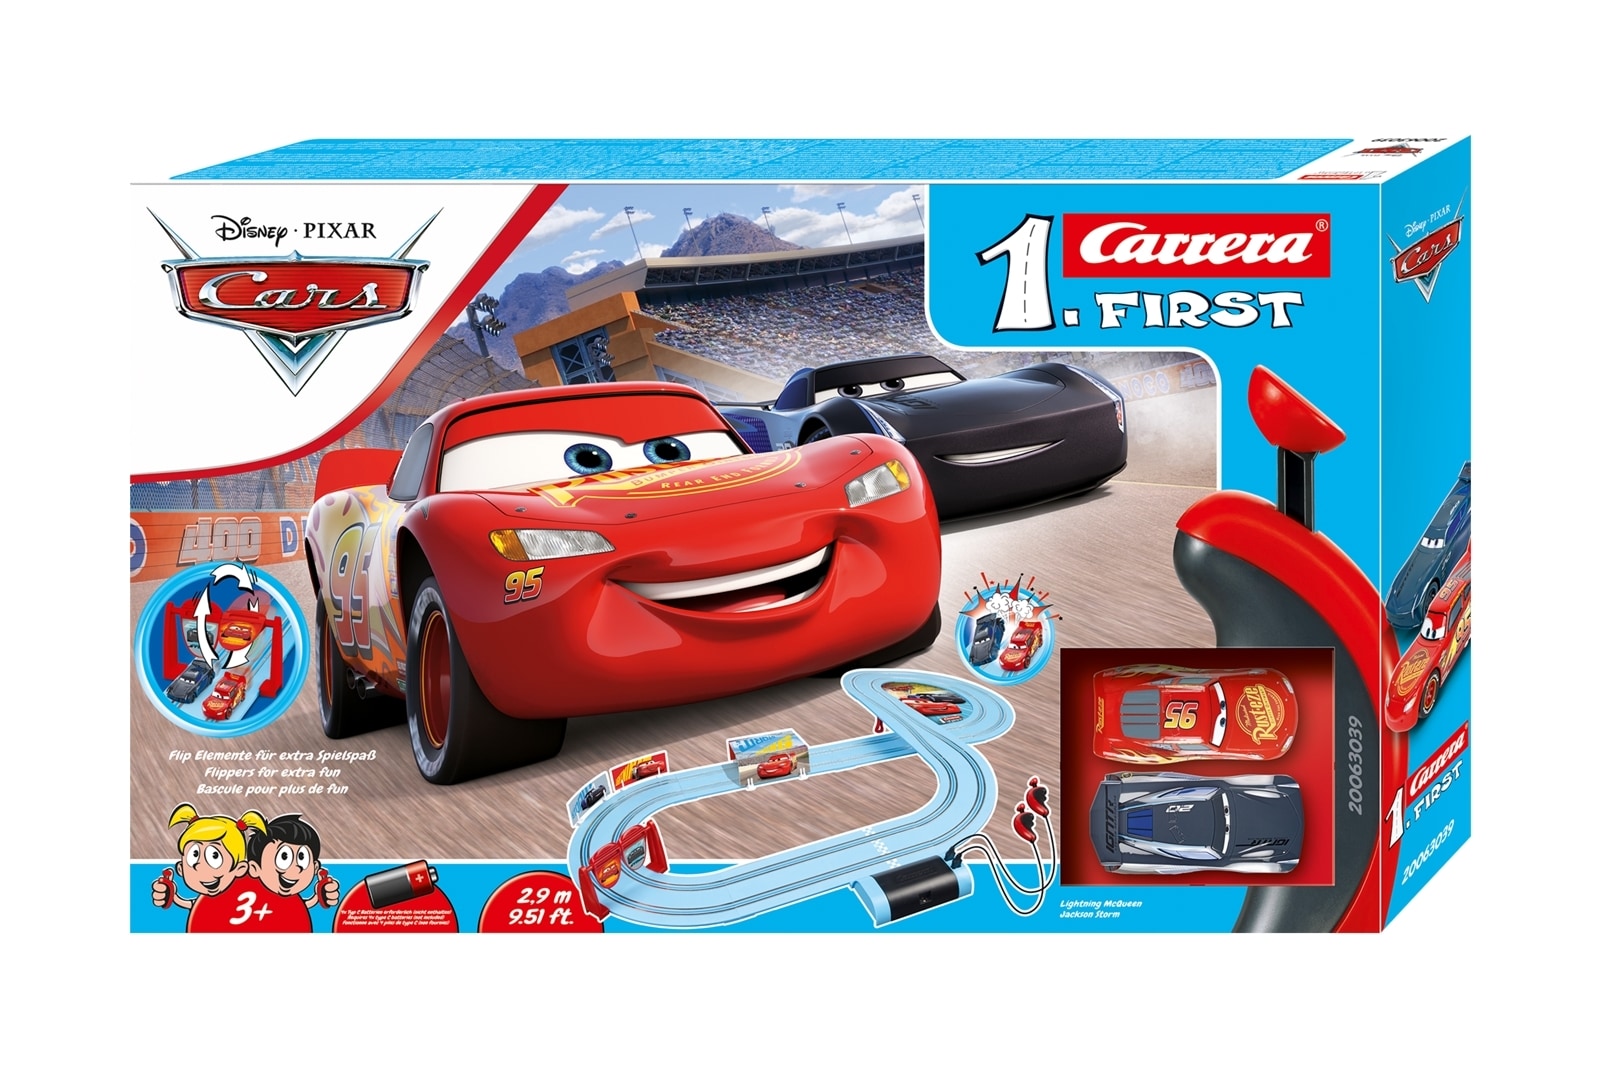 Carrera Bilbane - Disney Pixar Cars - First - Elkjøp